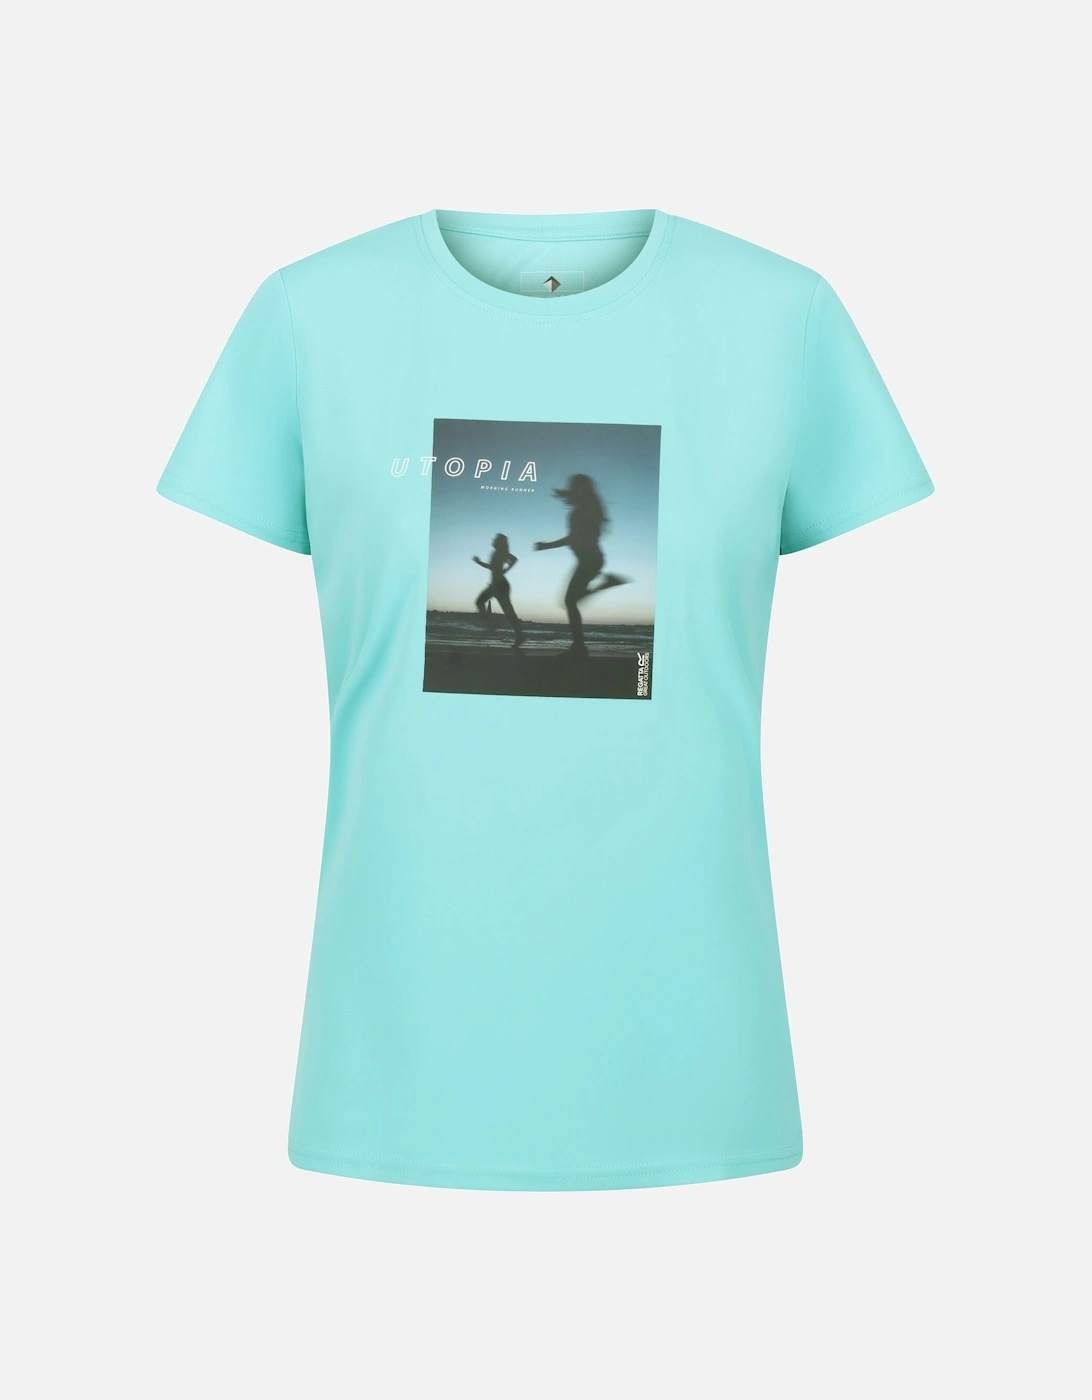 Womens/Ladies Fingal VII Utopia Running T-Shirt, 6 of 5